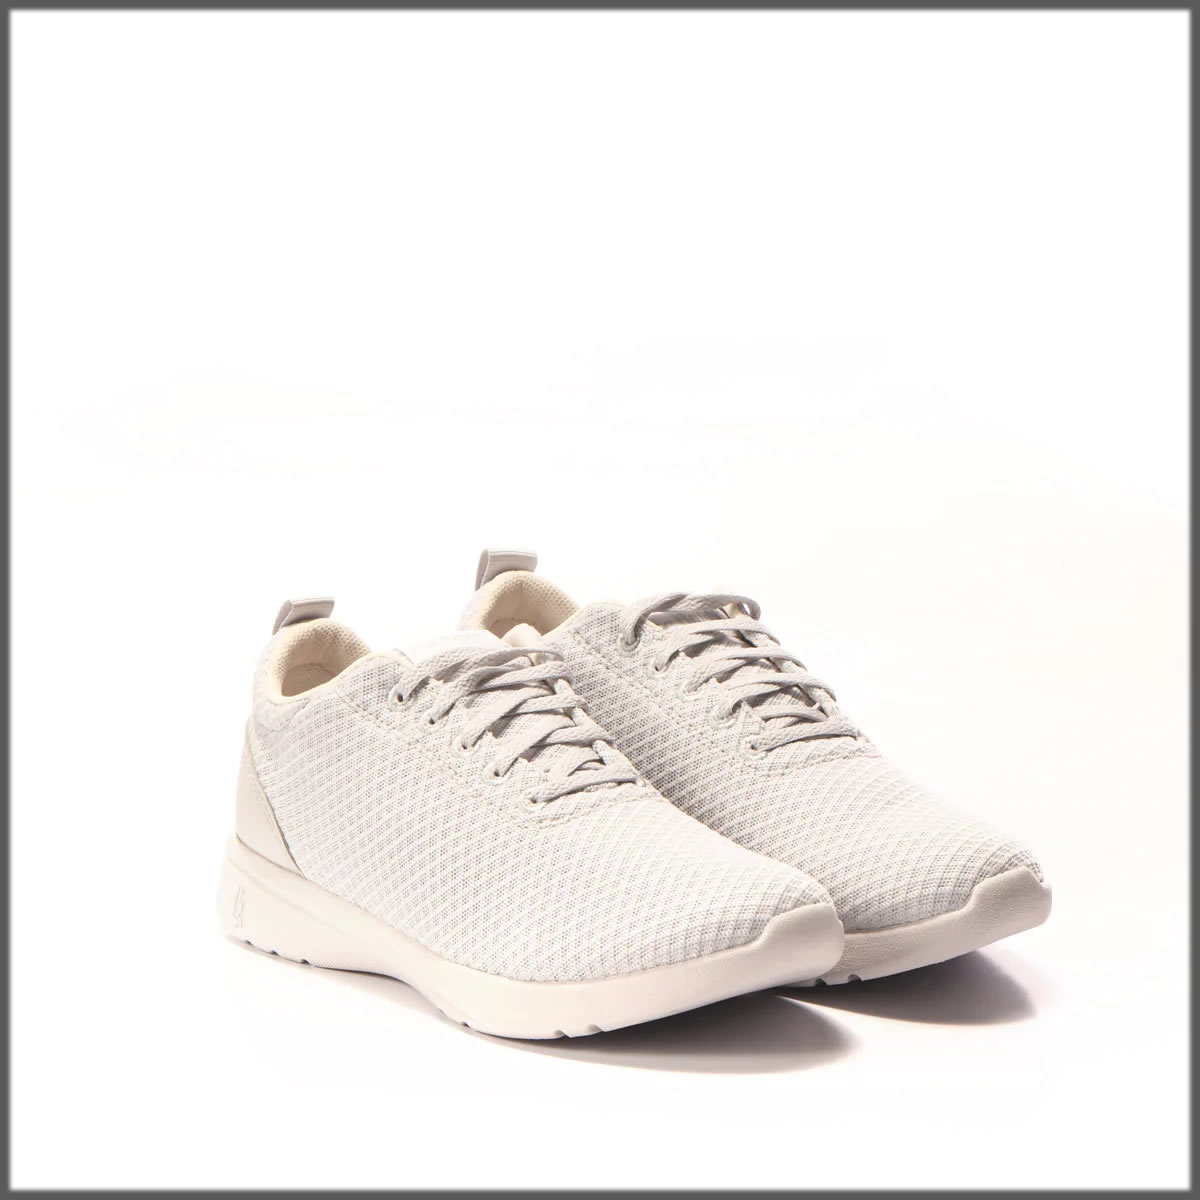 white running shoe